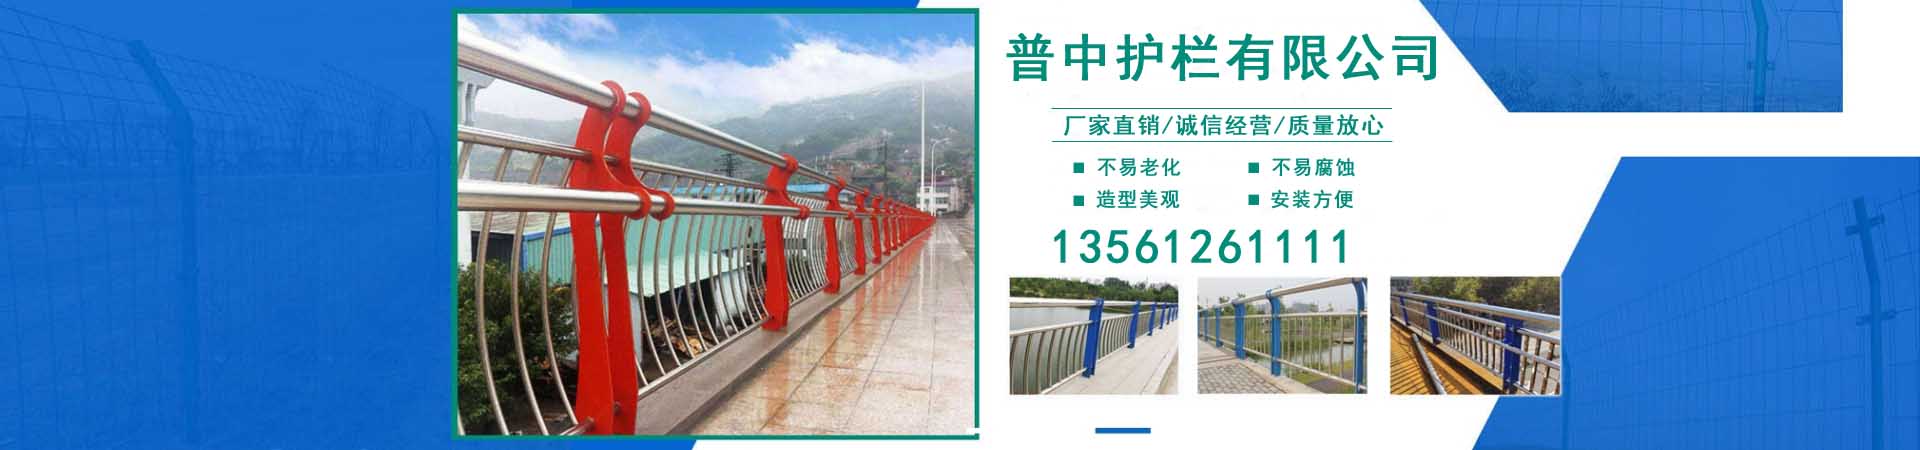 桥梁铝合金栏杆、香港本地桥梁铝合金栏杆、香港、香港桥梁铝合金栏杆